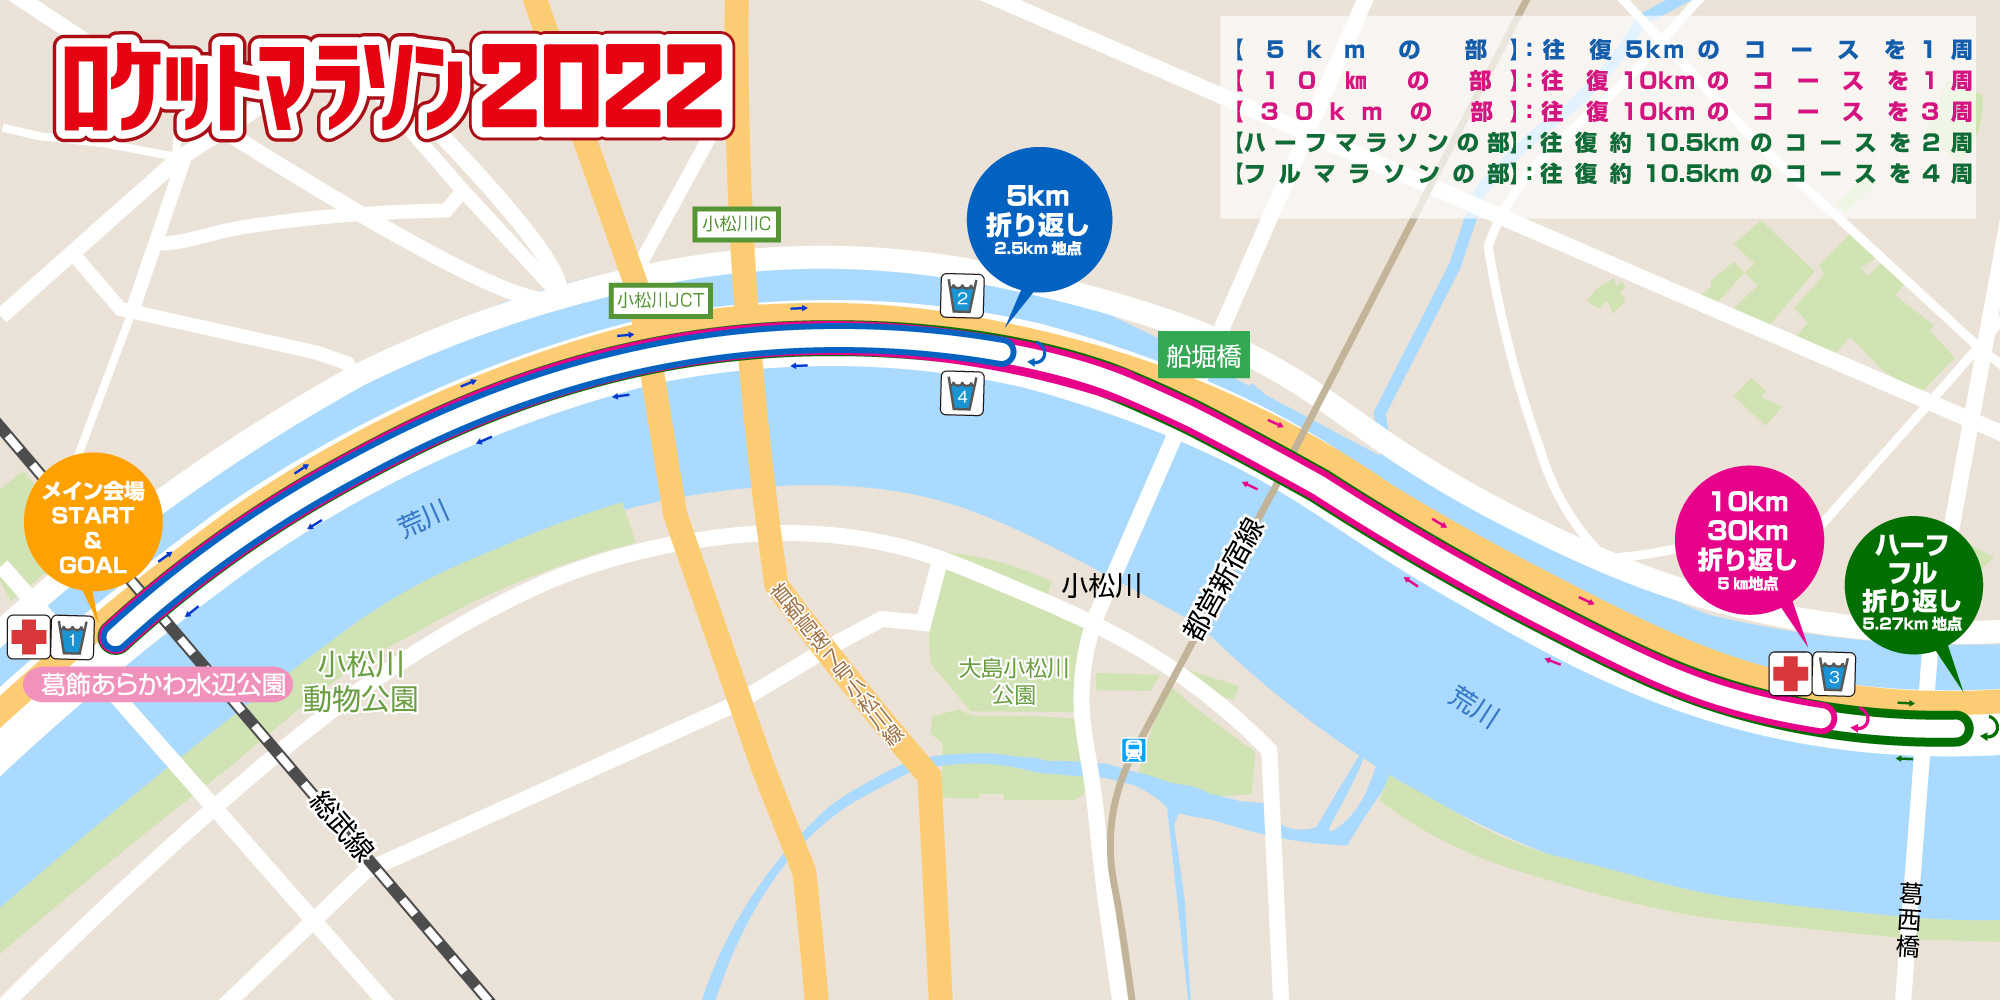 ロケットマラソン2022 東京大会 コースマップ